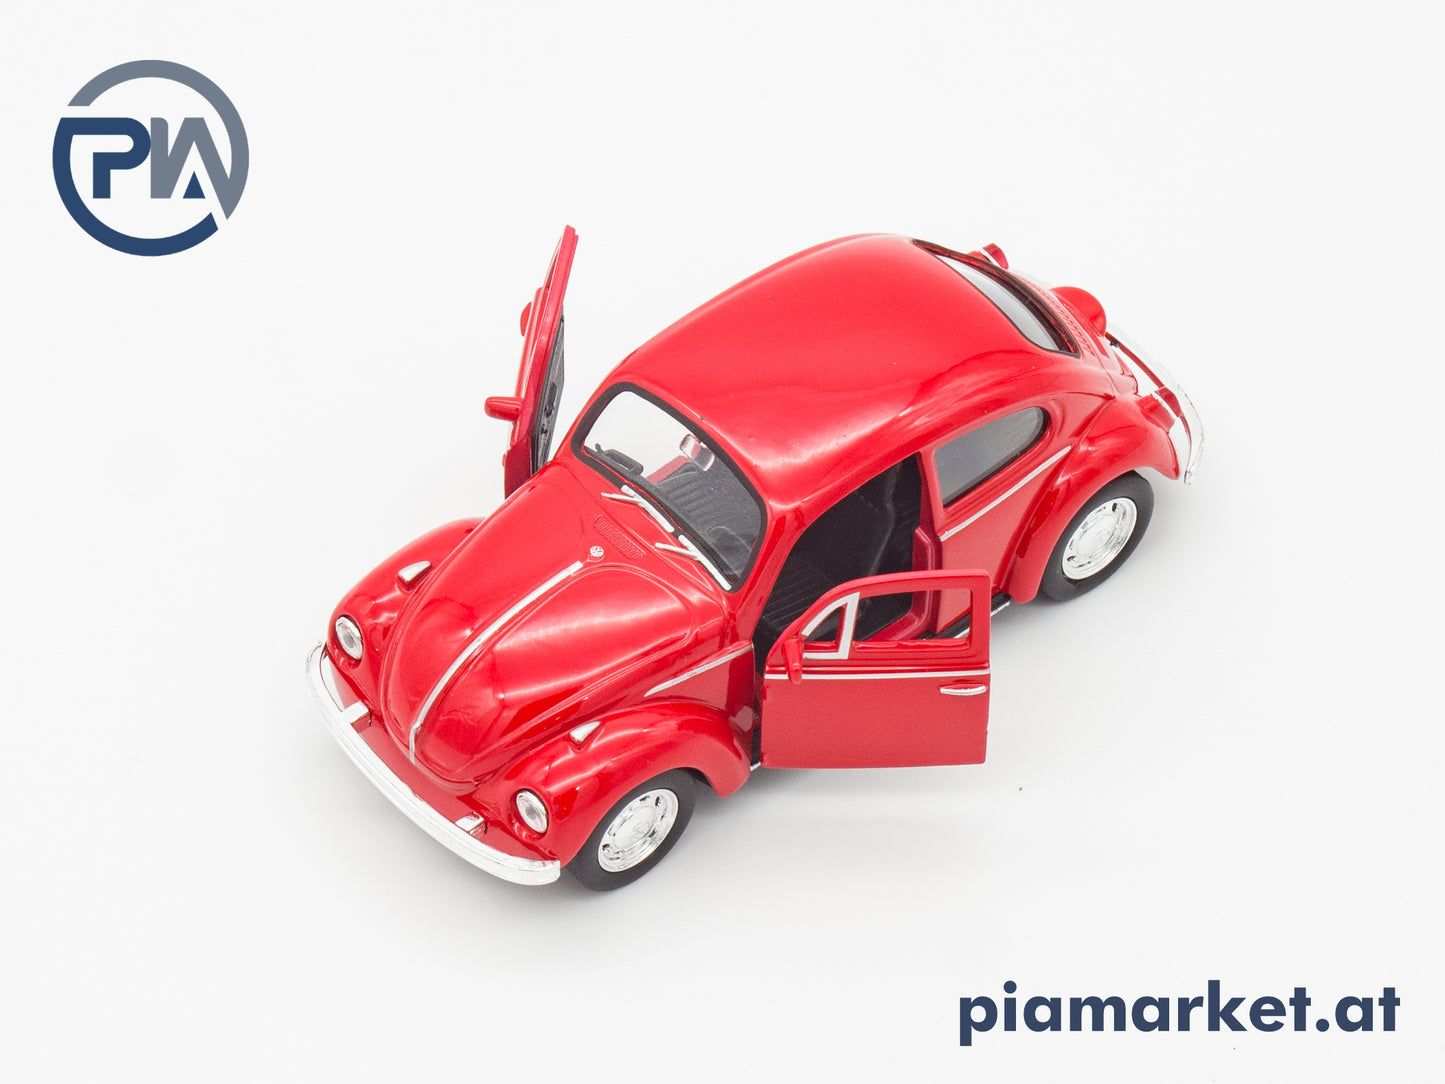 VW Käfer Spielzeug Auto mit Rückziehfunktion, Rot